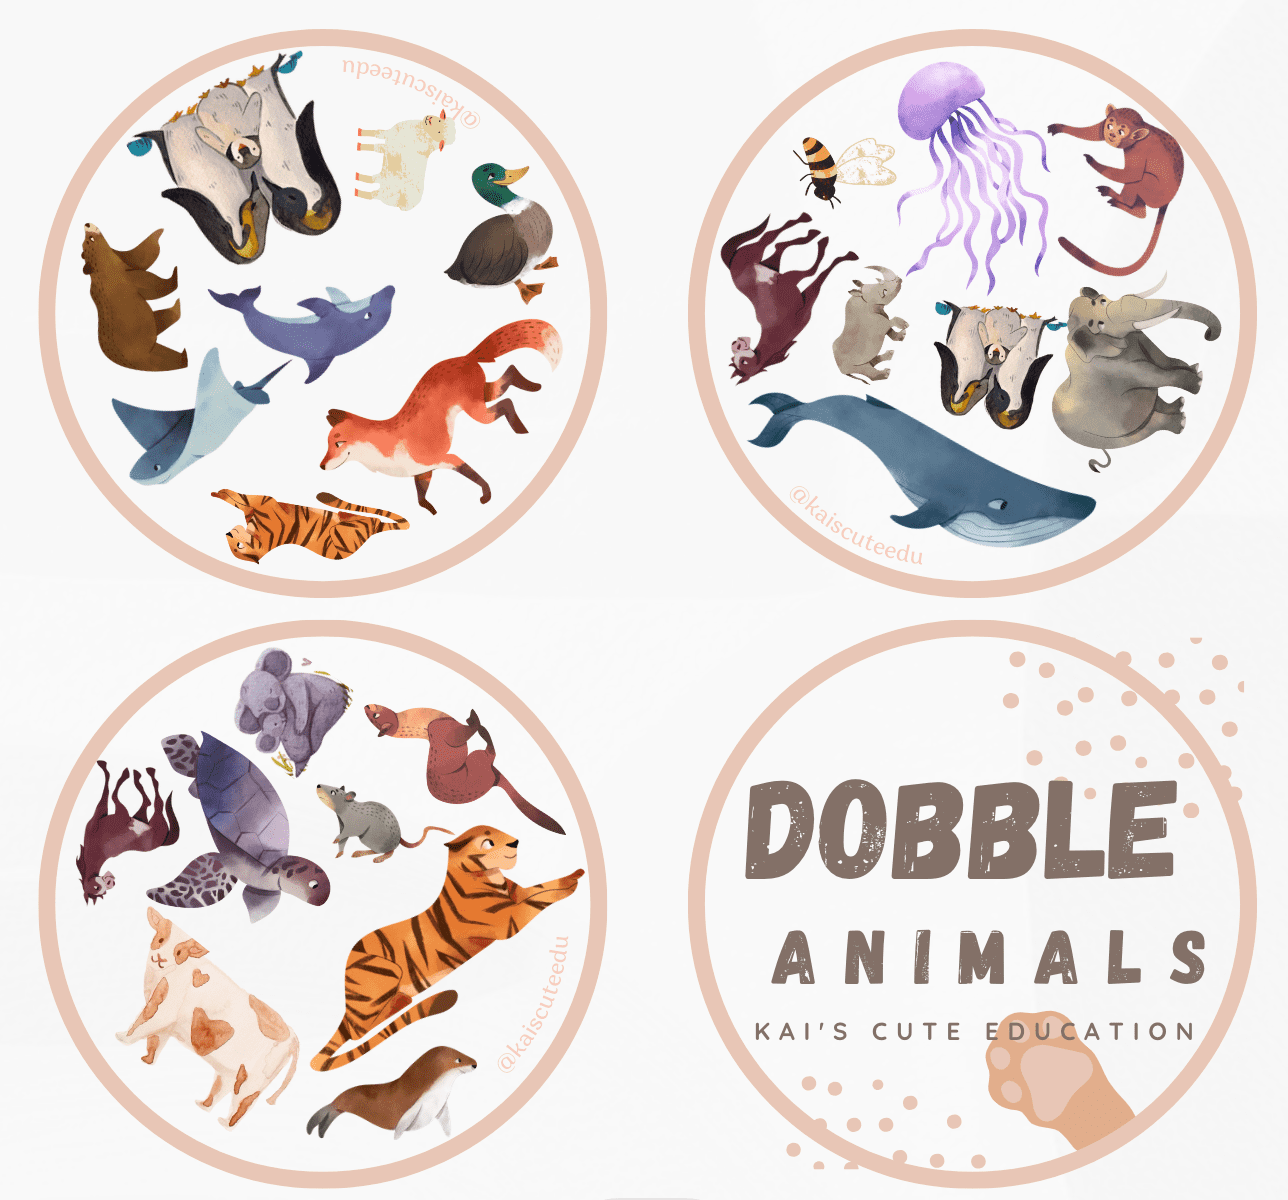 Dobble Animales